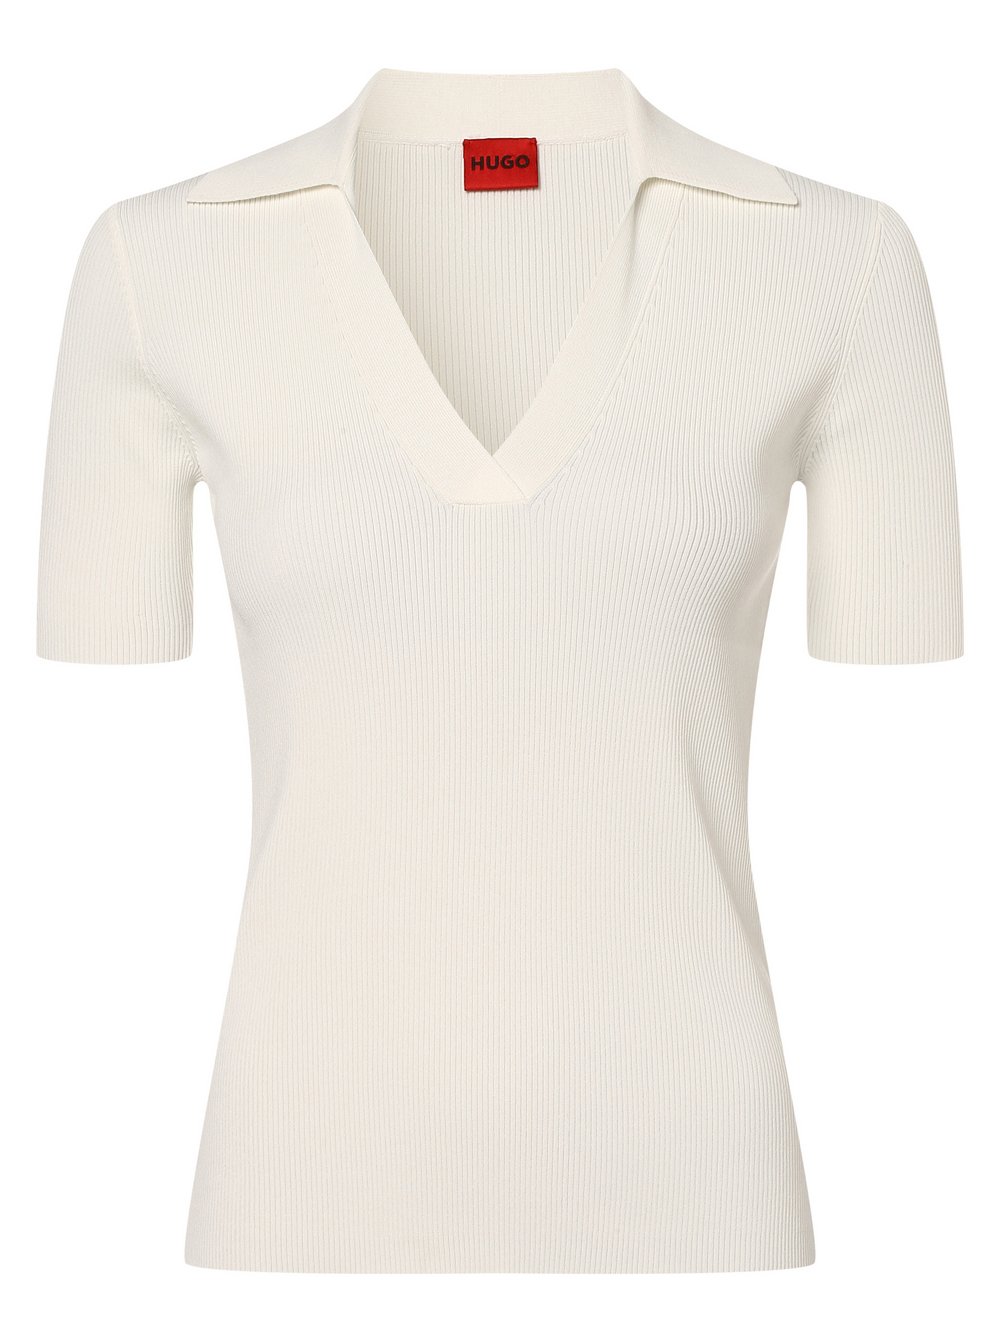 HUGO - Damska koszulka polo – Sovitellia, biały